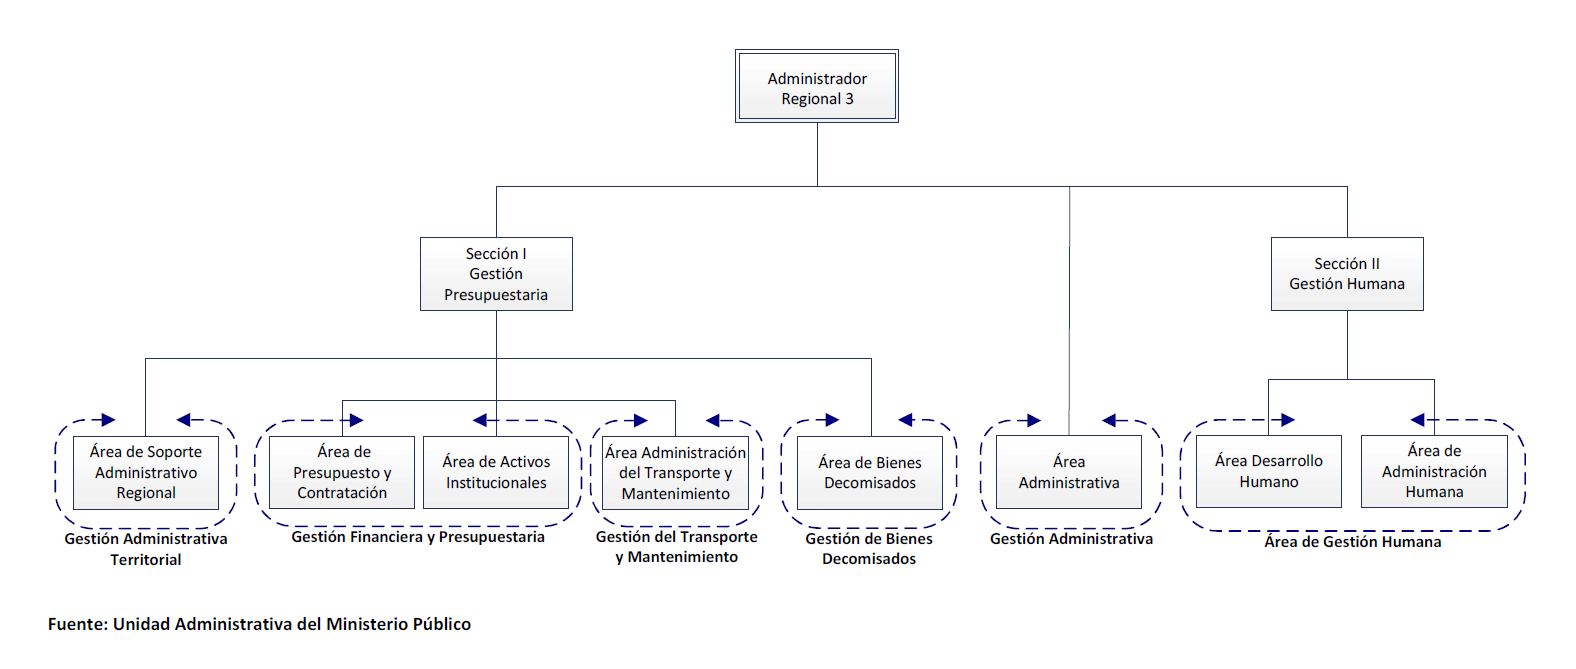 Estructura Organizacional por Áreas de Gestión en la UAMP